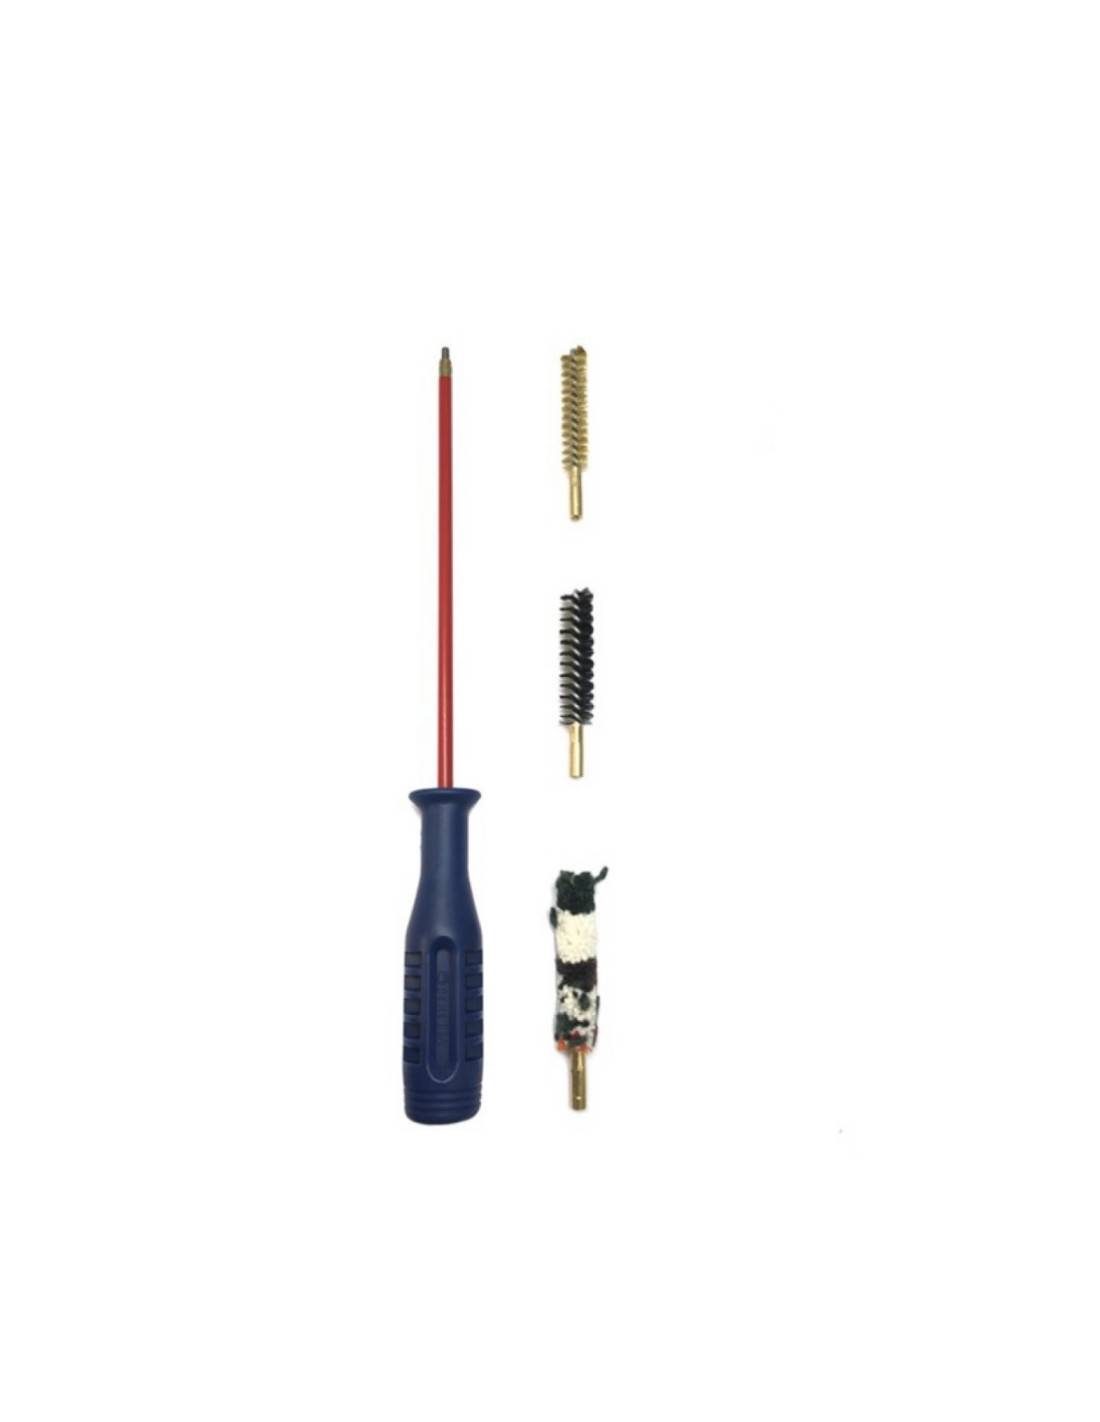 BERETTA Cleaning Kit Pulizia per Pistola CO2 cal. 4.5mm / .177 codice E03140